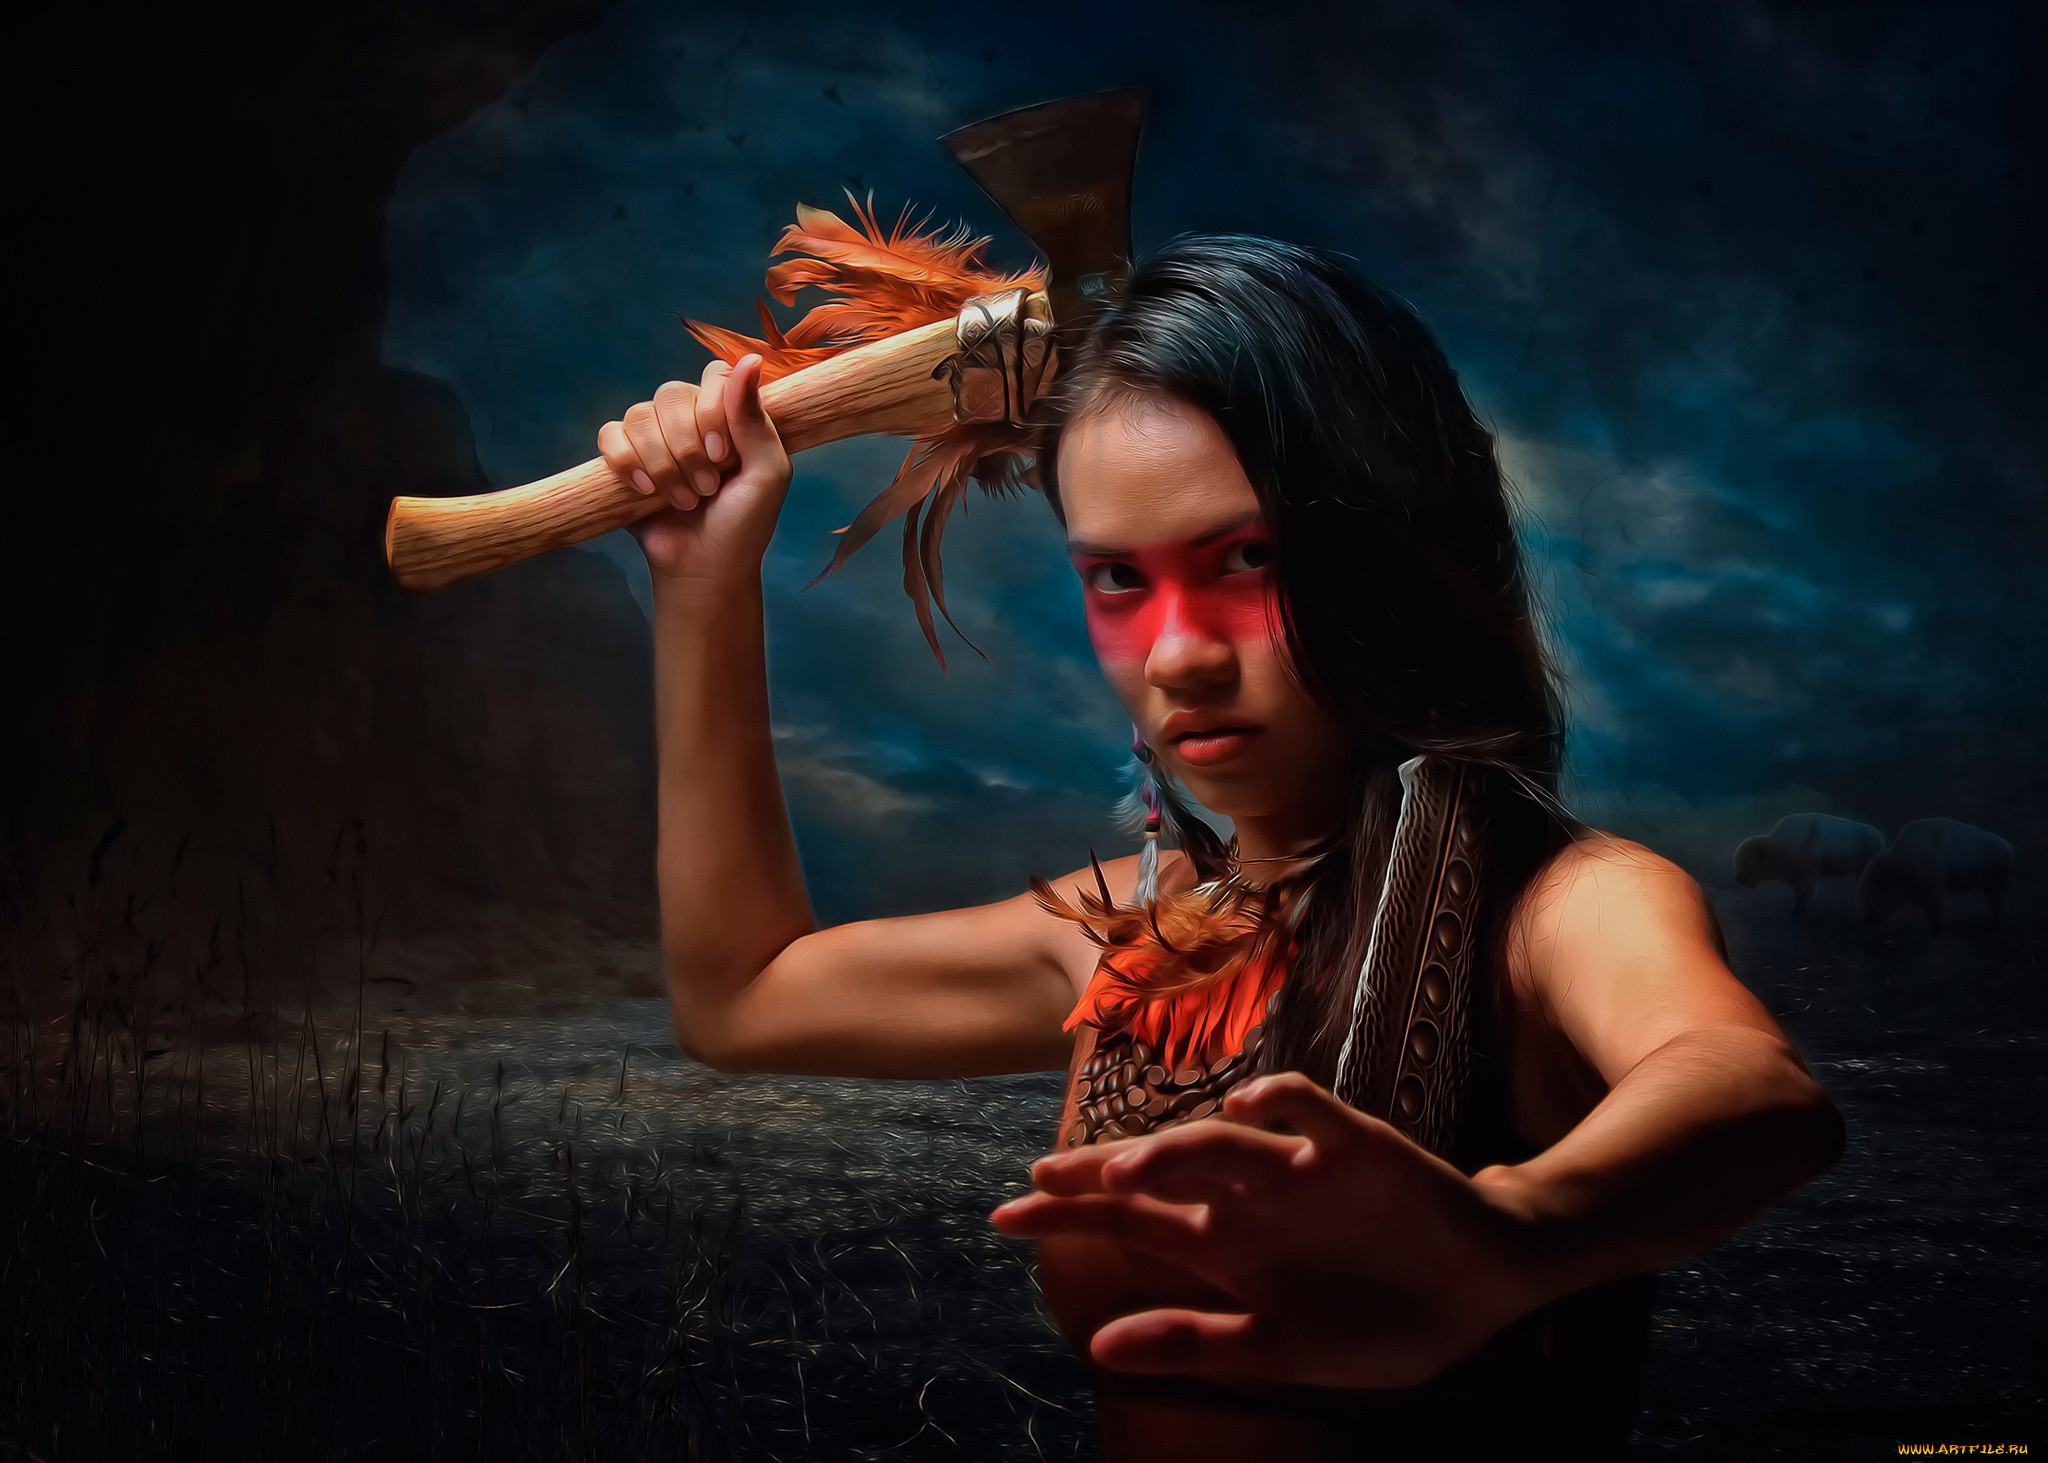 Ф индейцев. Томагавк индейцев Северной Америки. Native American indian Tomahawk. Девушка индеец с топором.